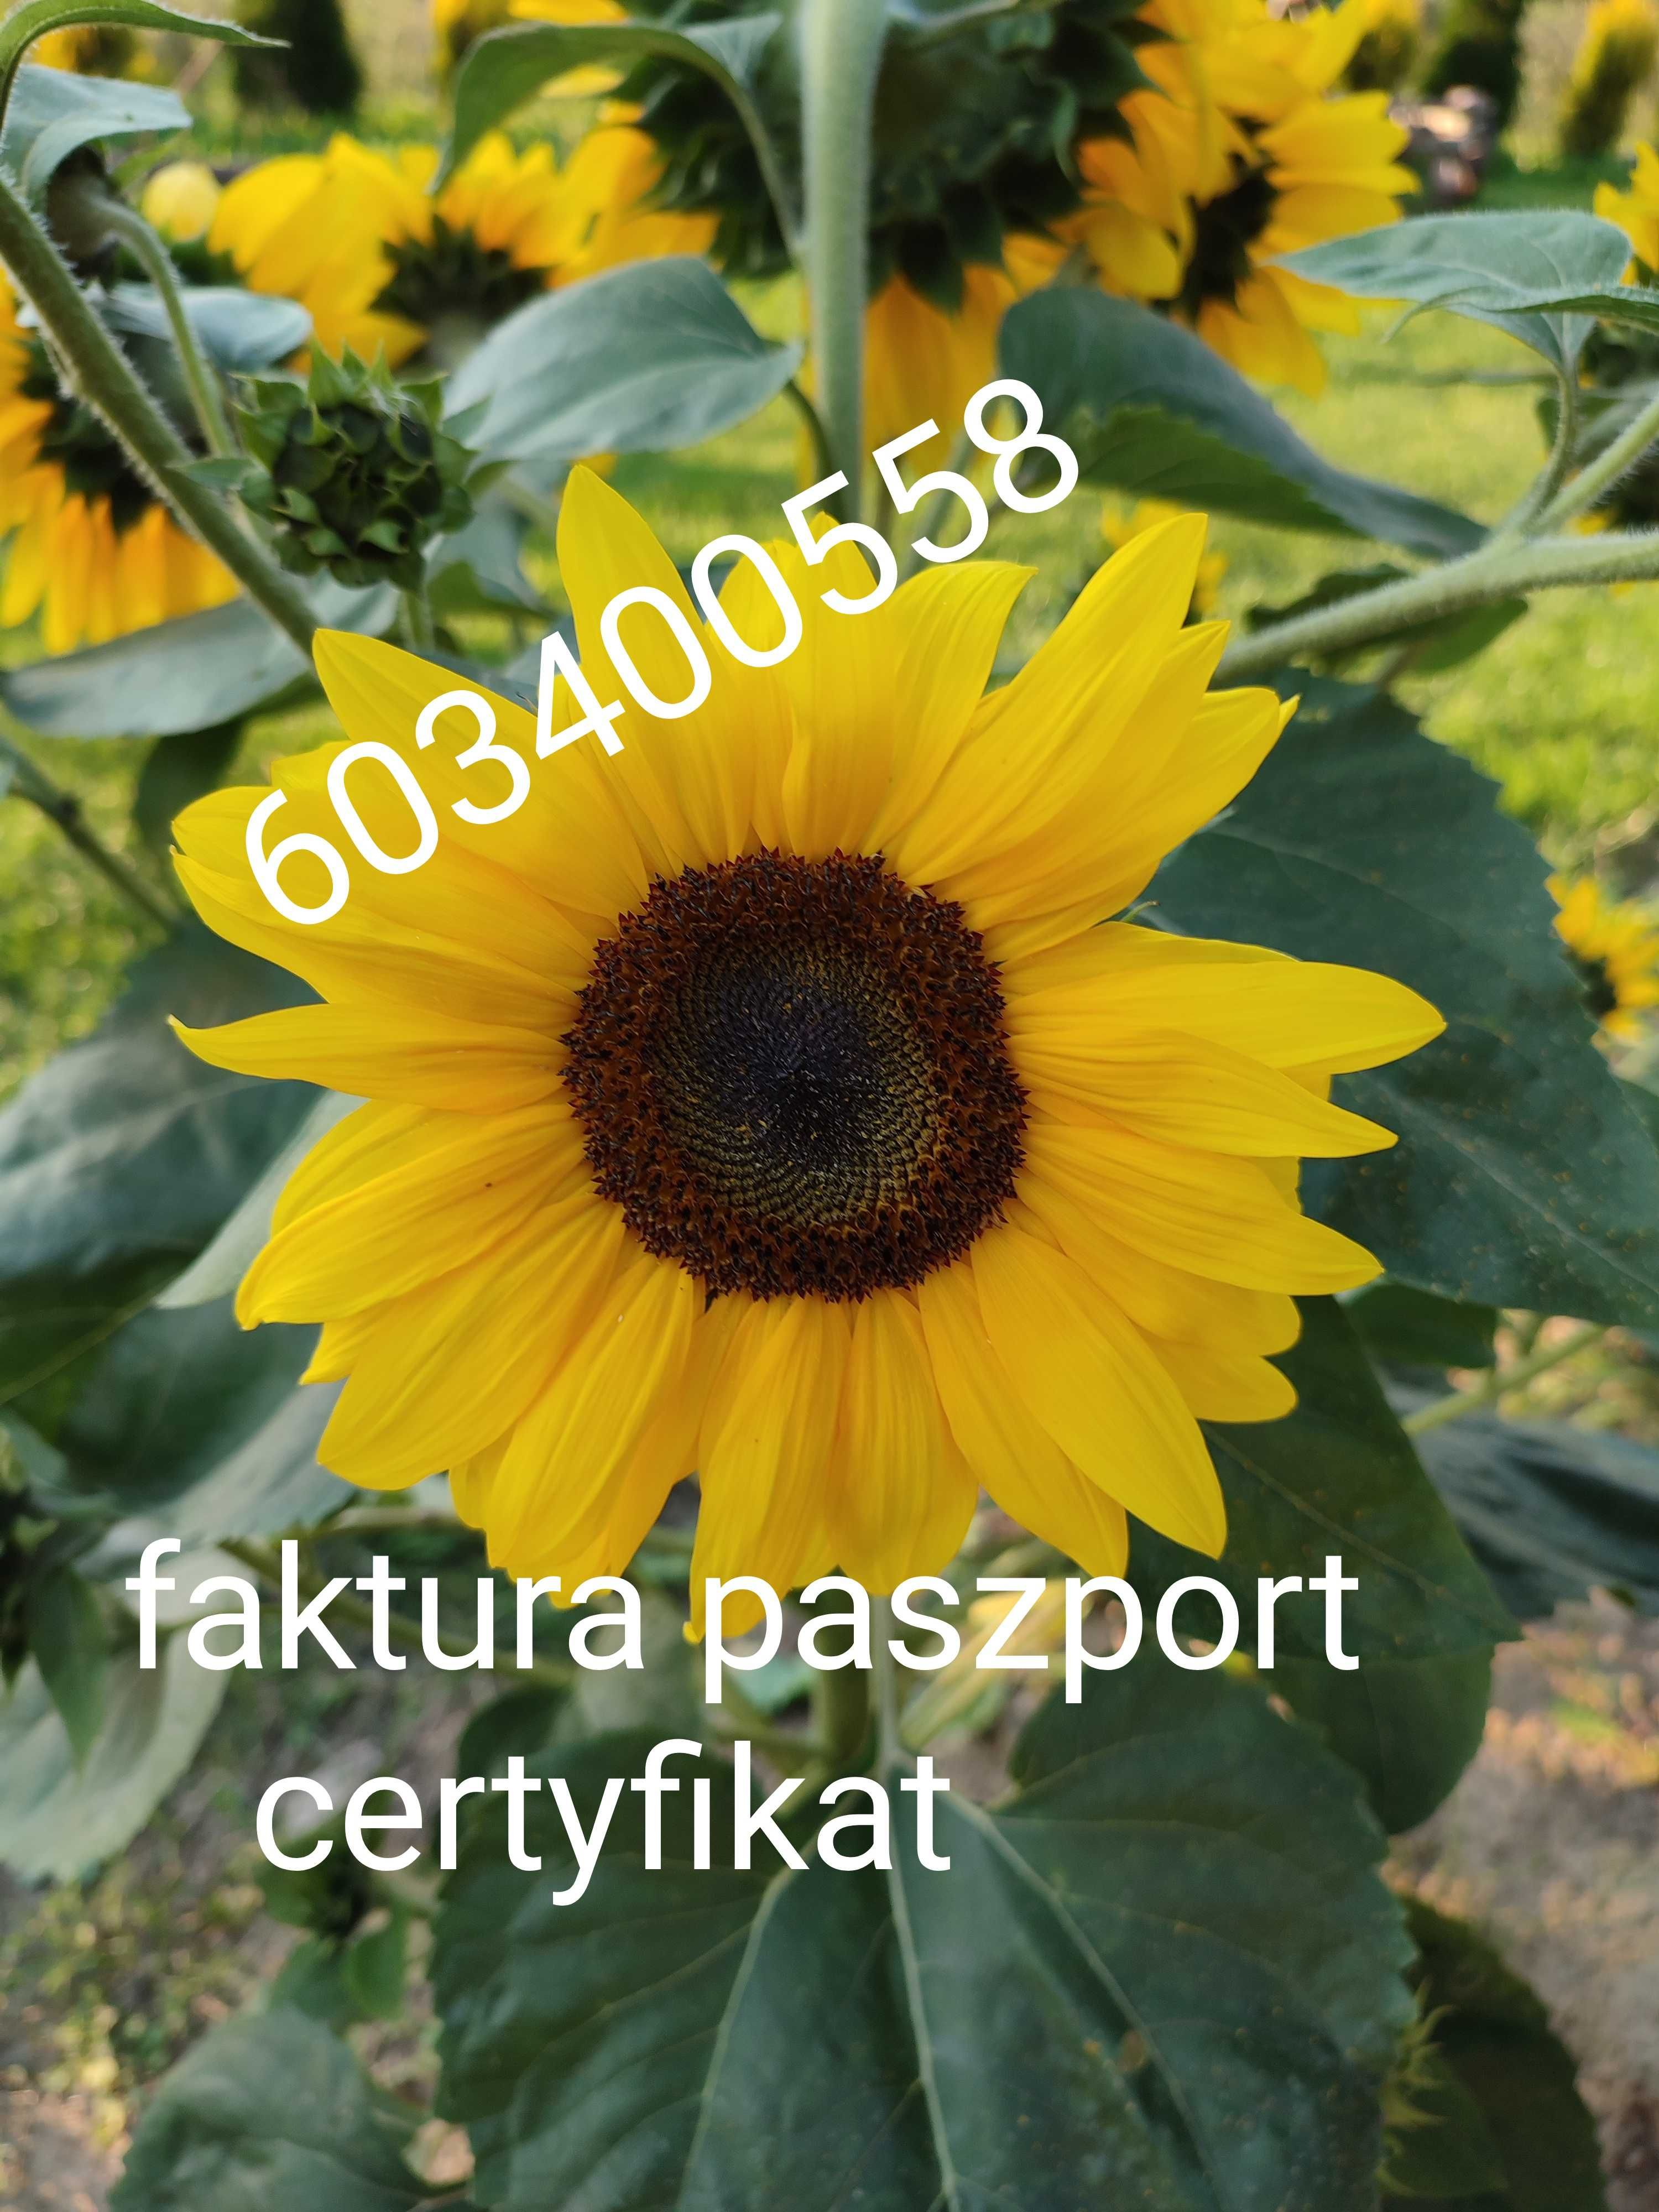 Słonecznik ozdobny taiyo faktura / paszport/certyfikat